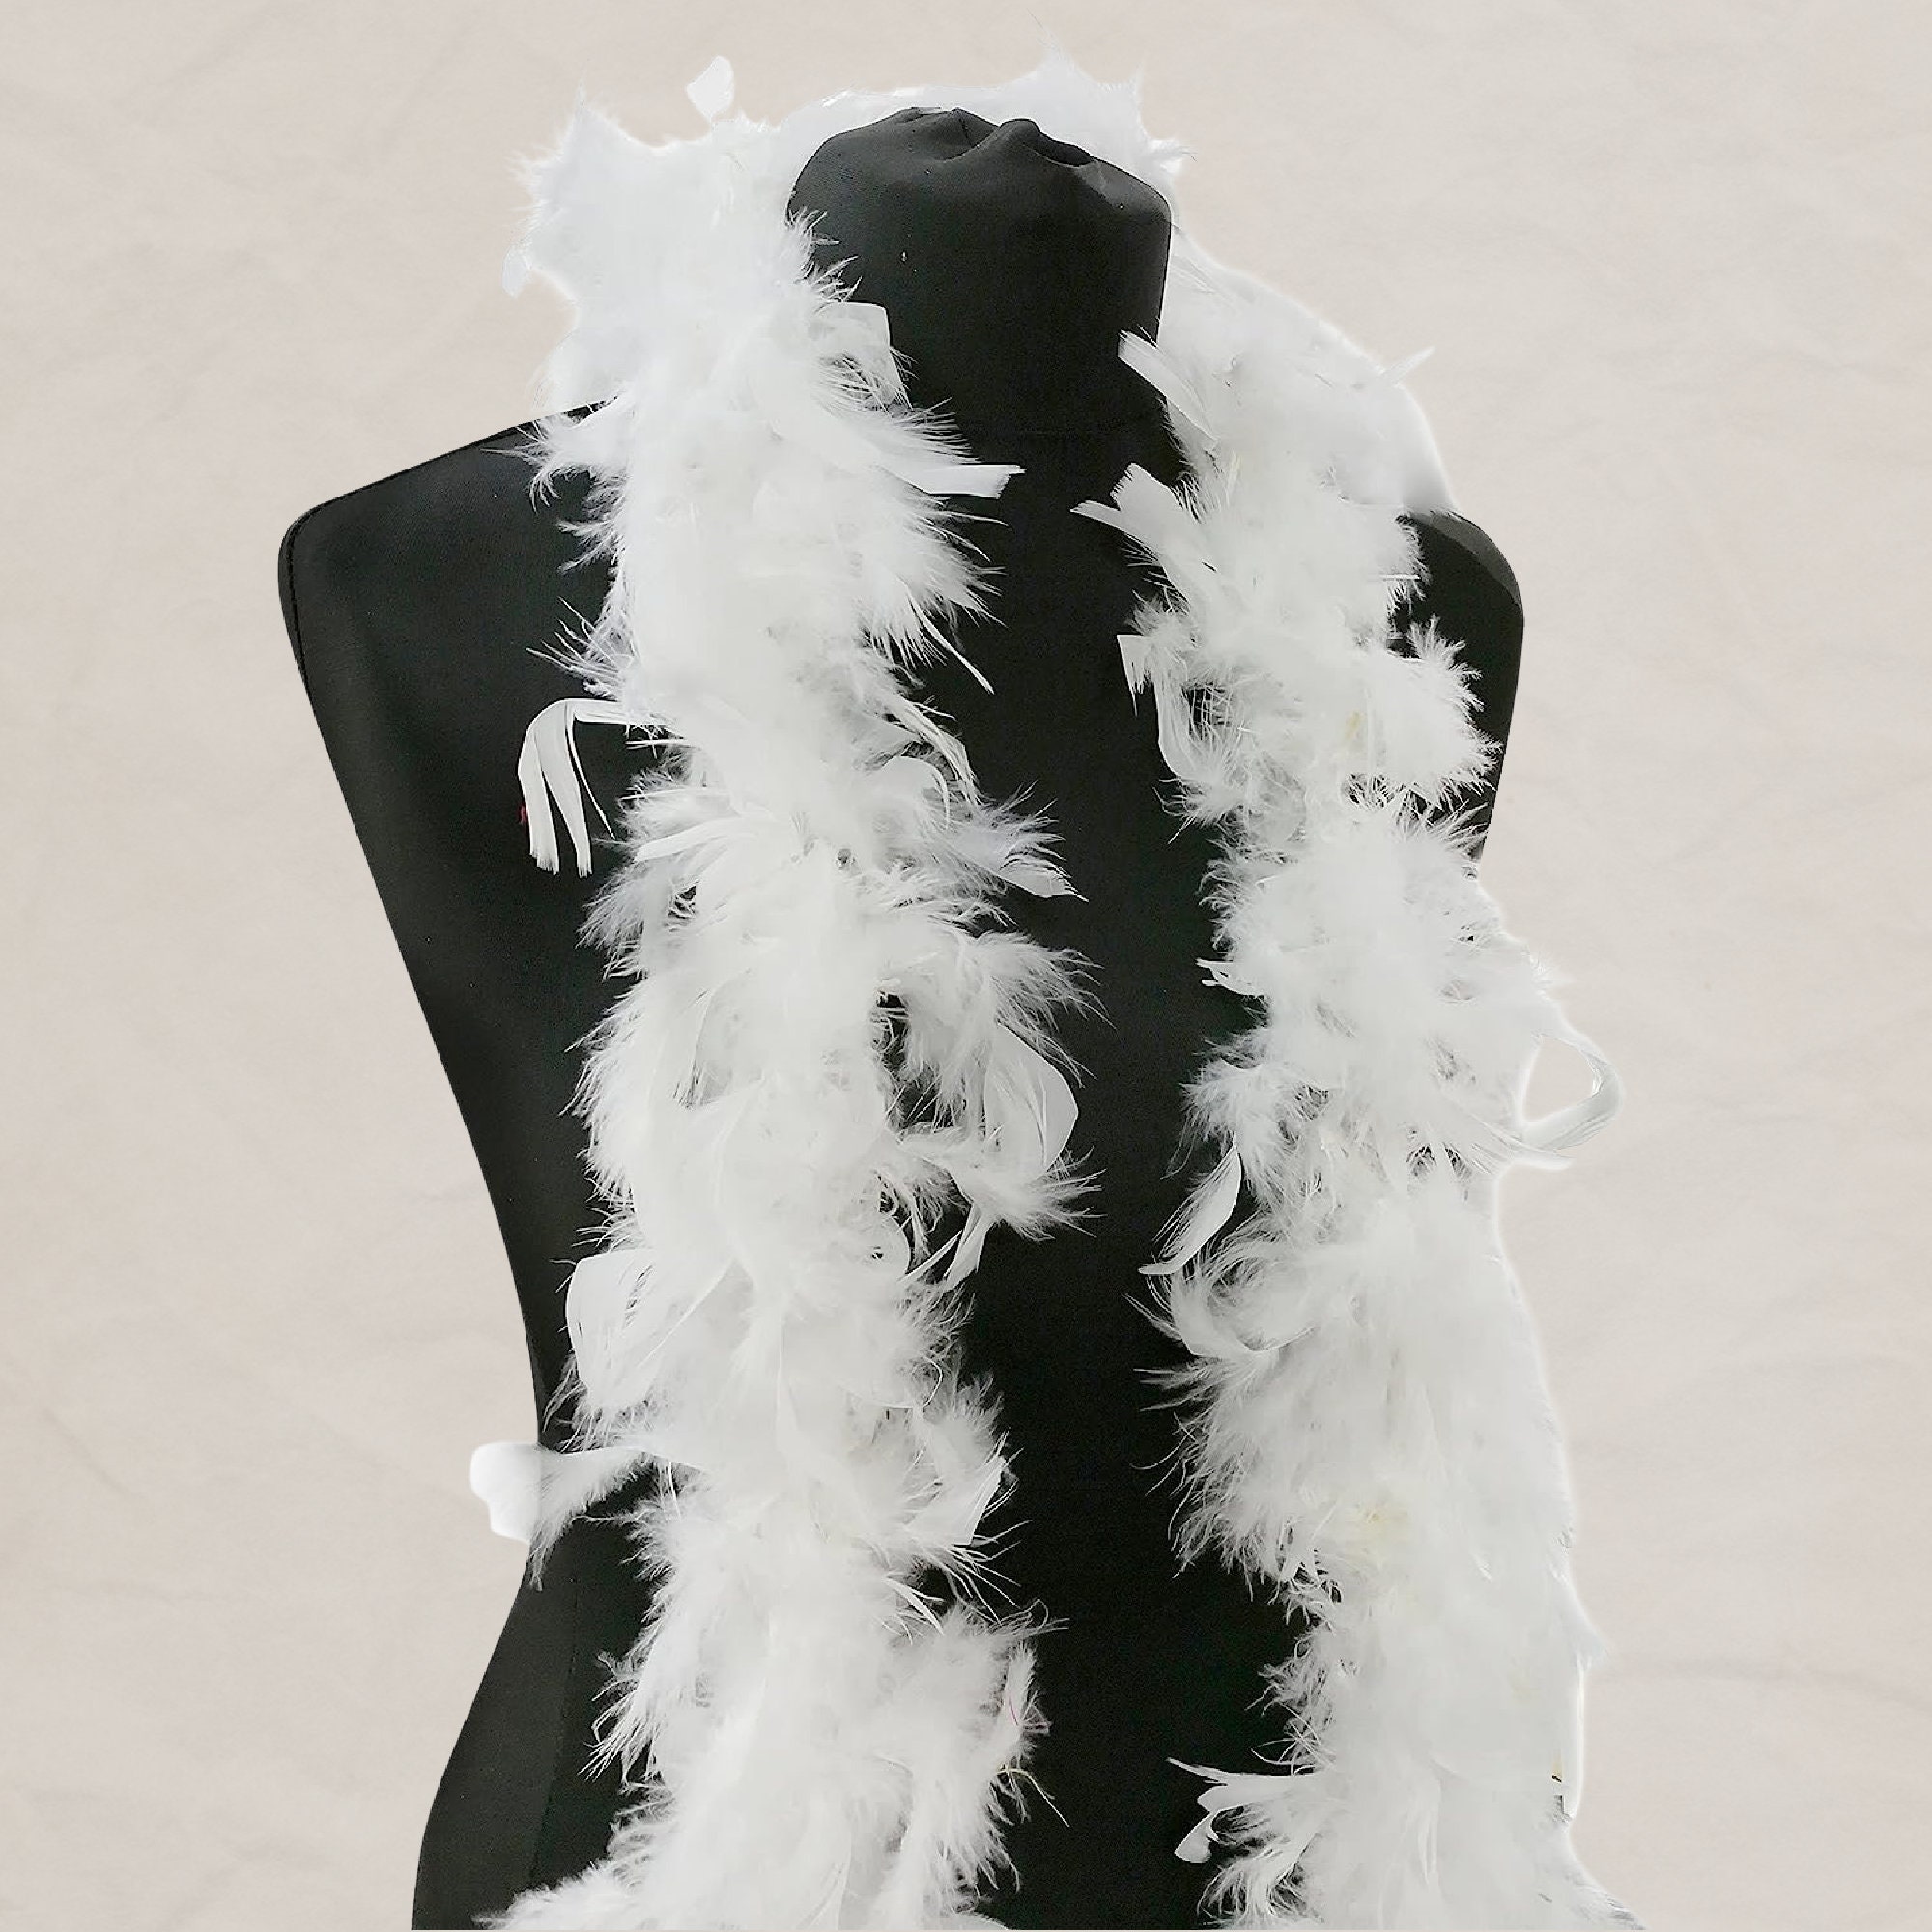 Boa en plumes - 1m80 - Blanc et Noir - Jour de Fête - Accessoires